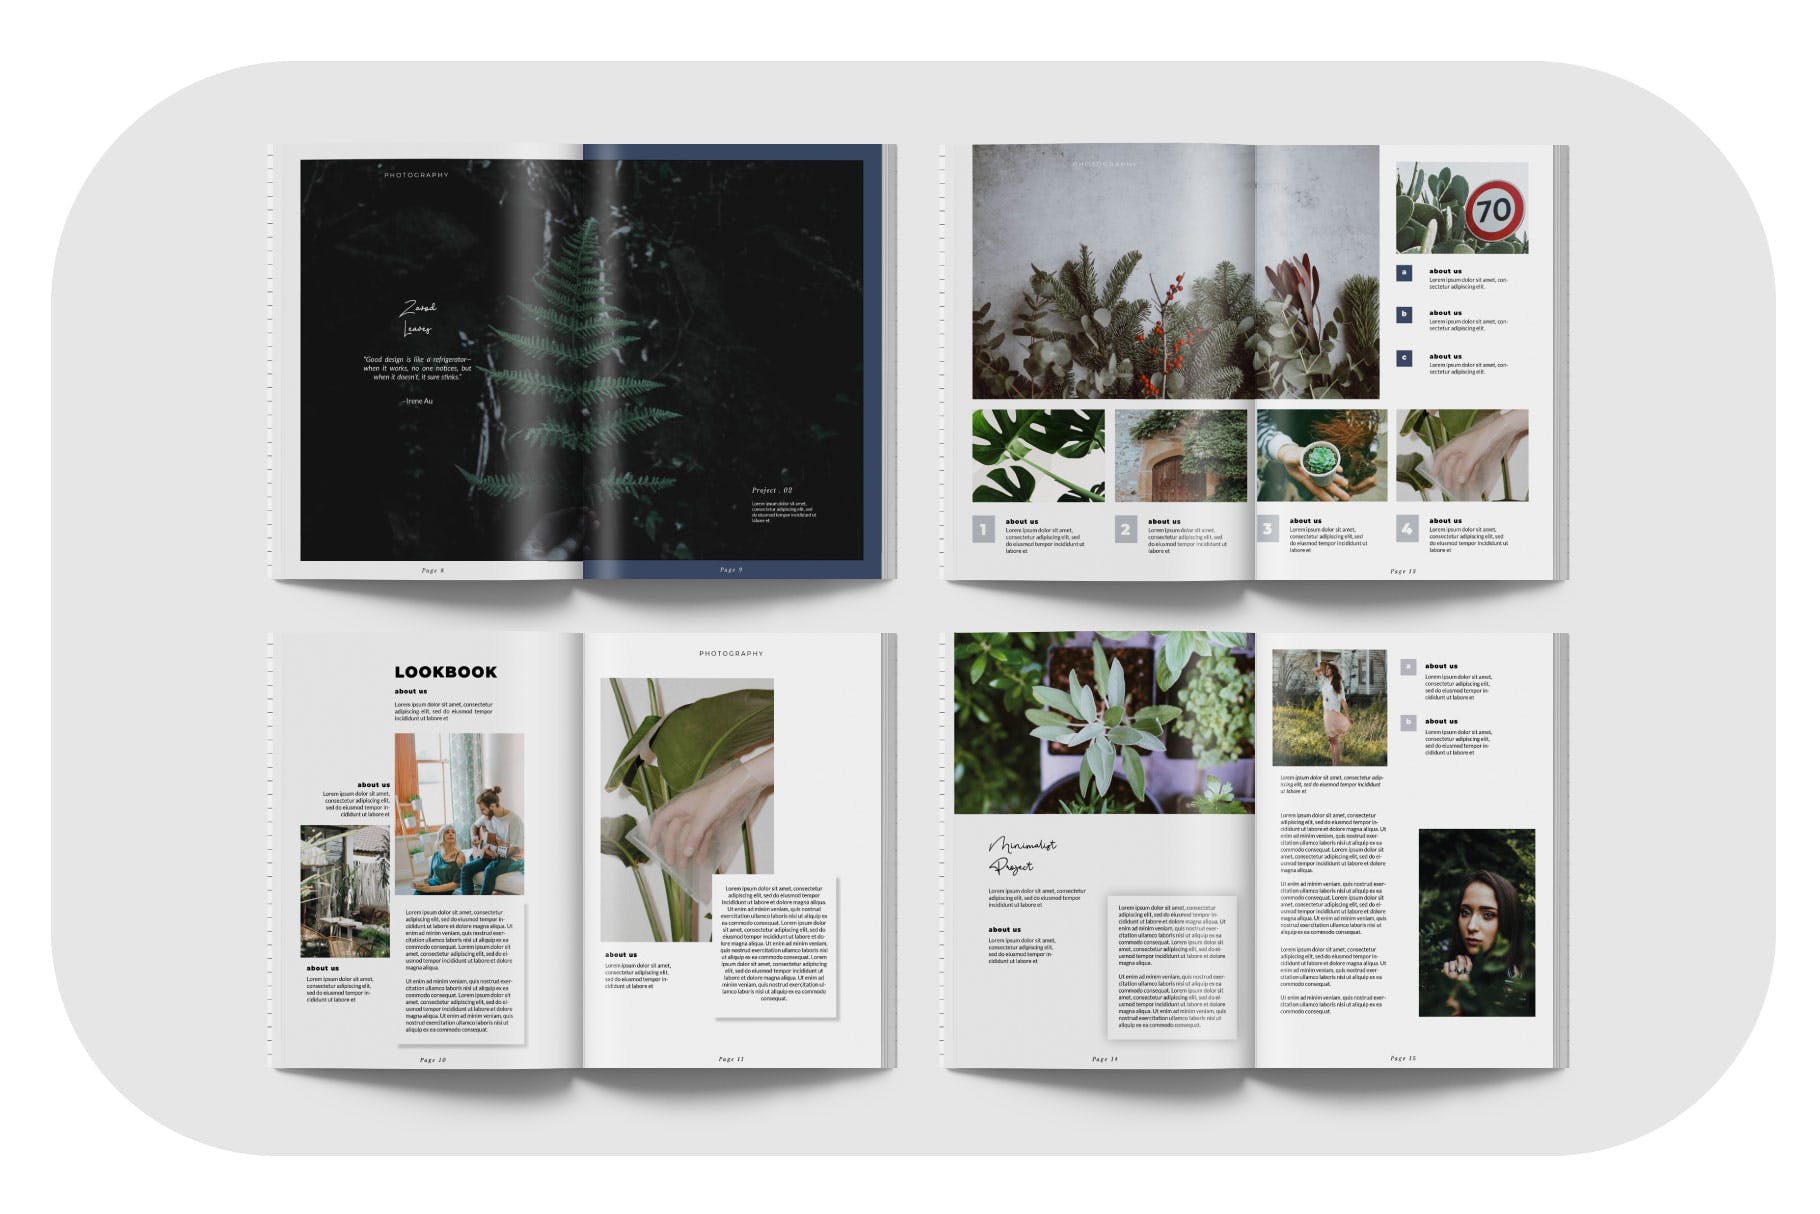 摄影/模特主题16设计网精选杂志排版设计模板 ZAVOD Business Magazine Minimal Template – LS插图(2)